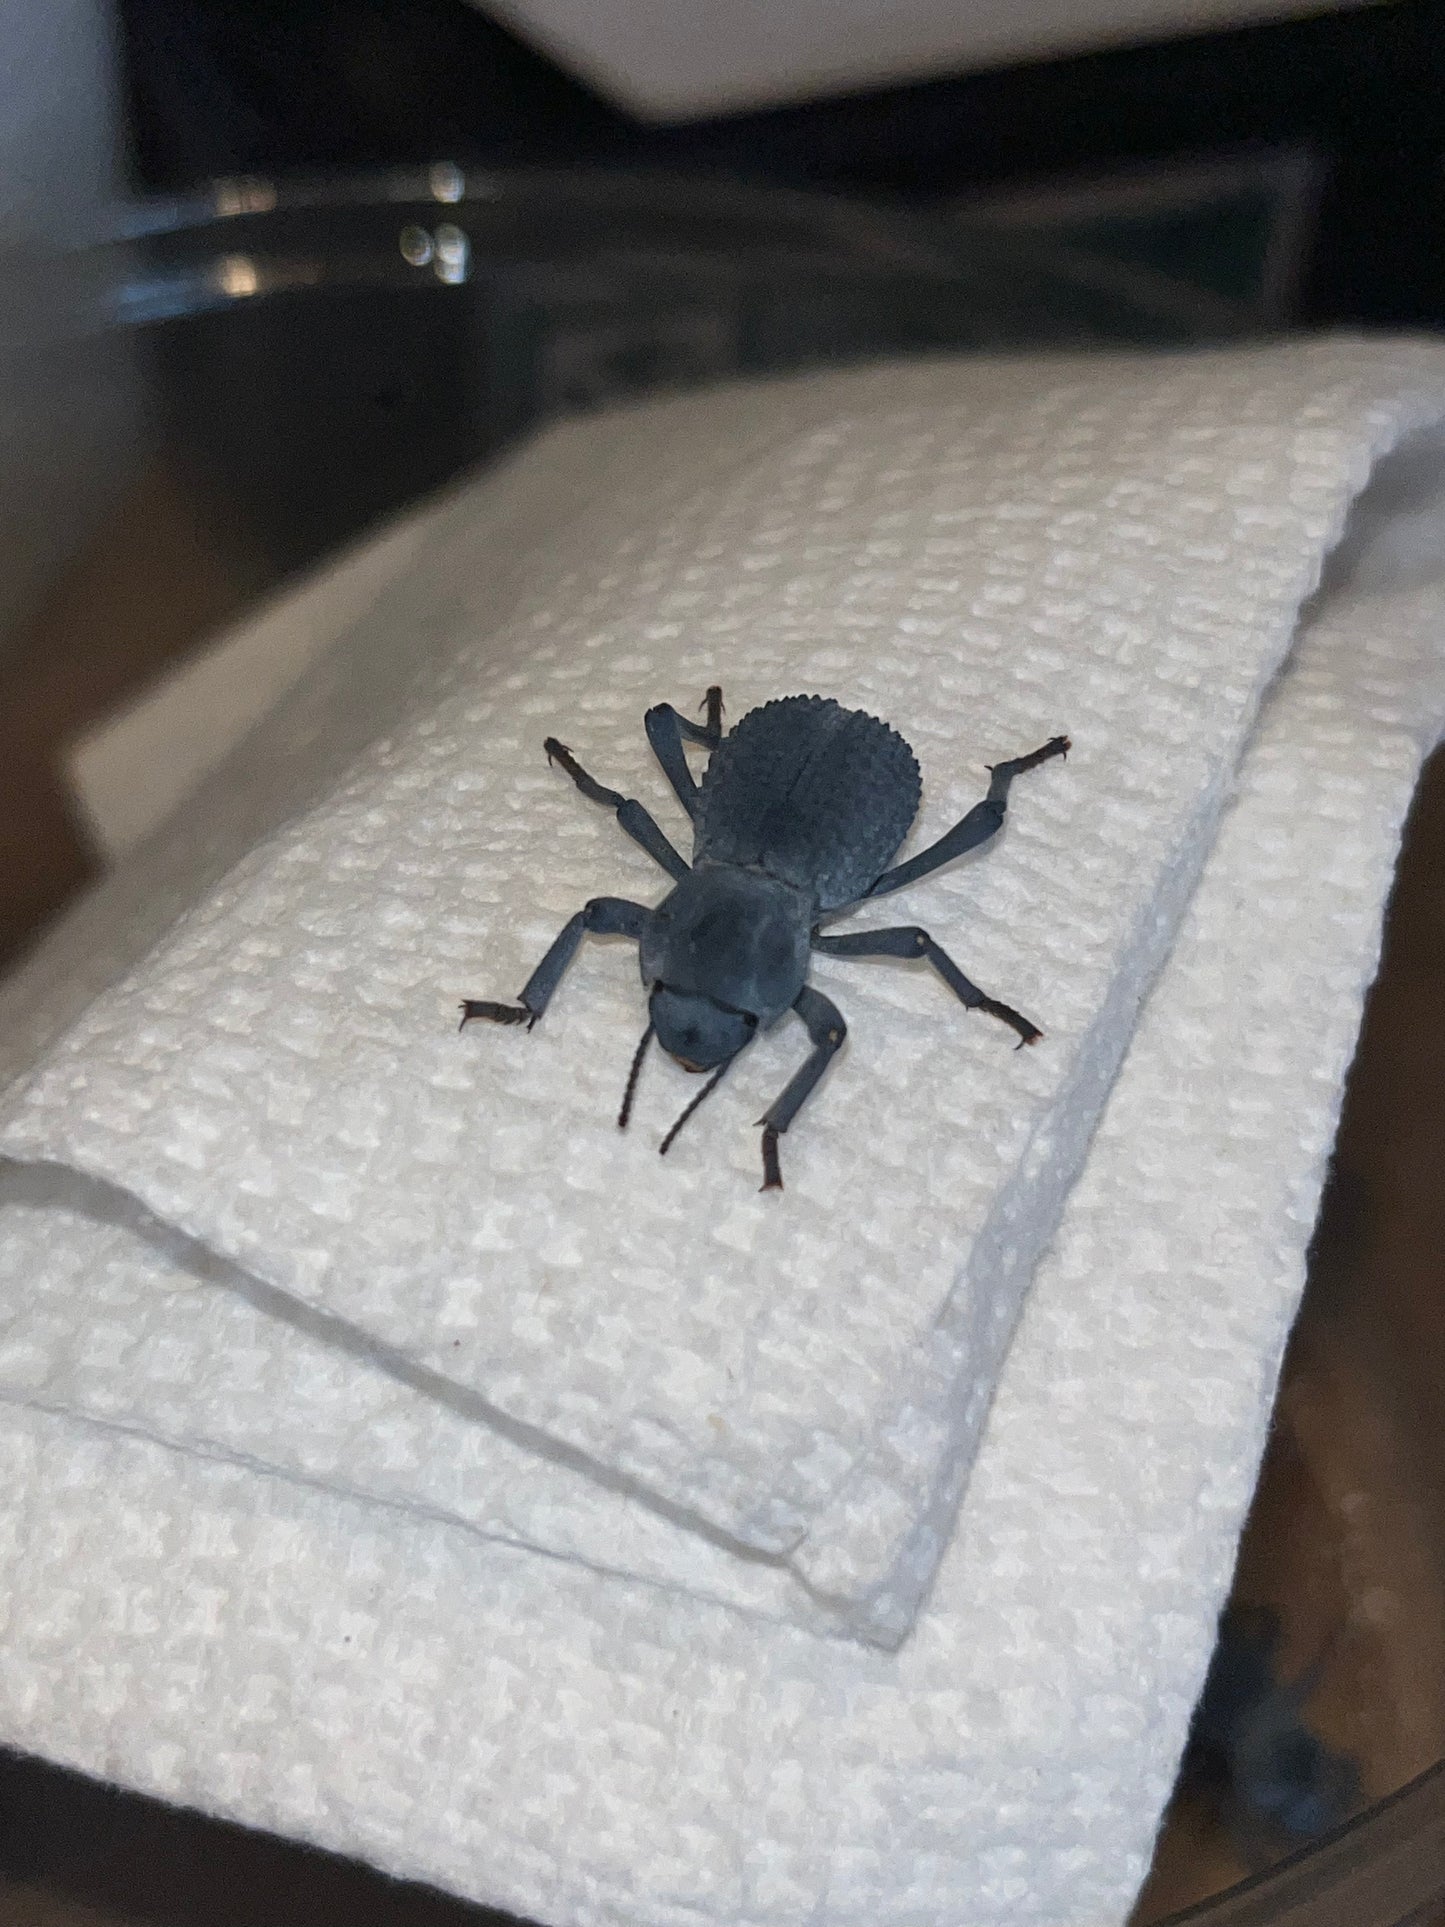 Asbolus Verrucosus (Blue Feigning Beetle)